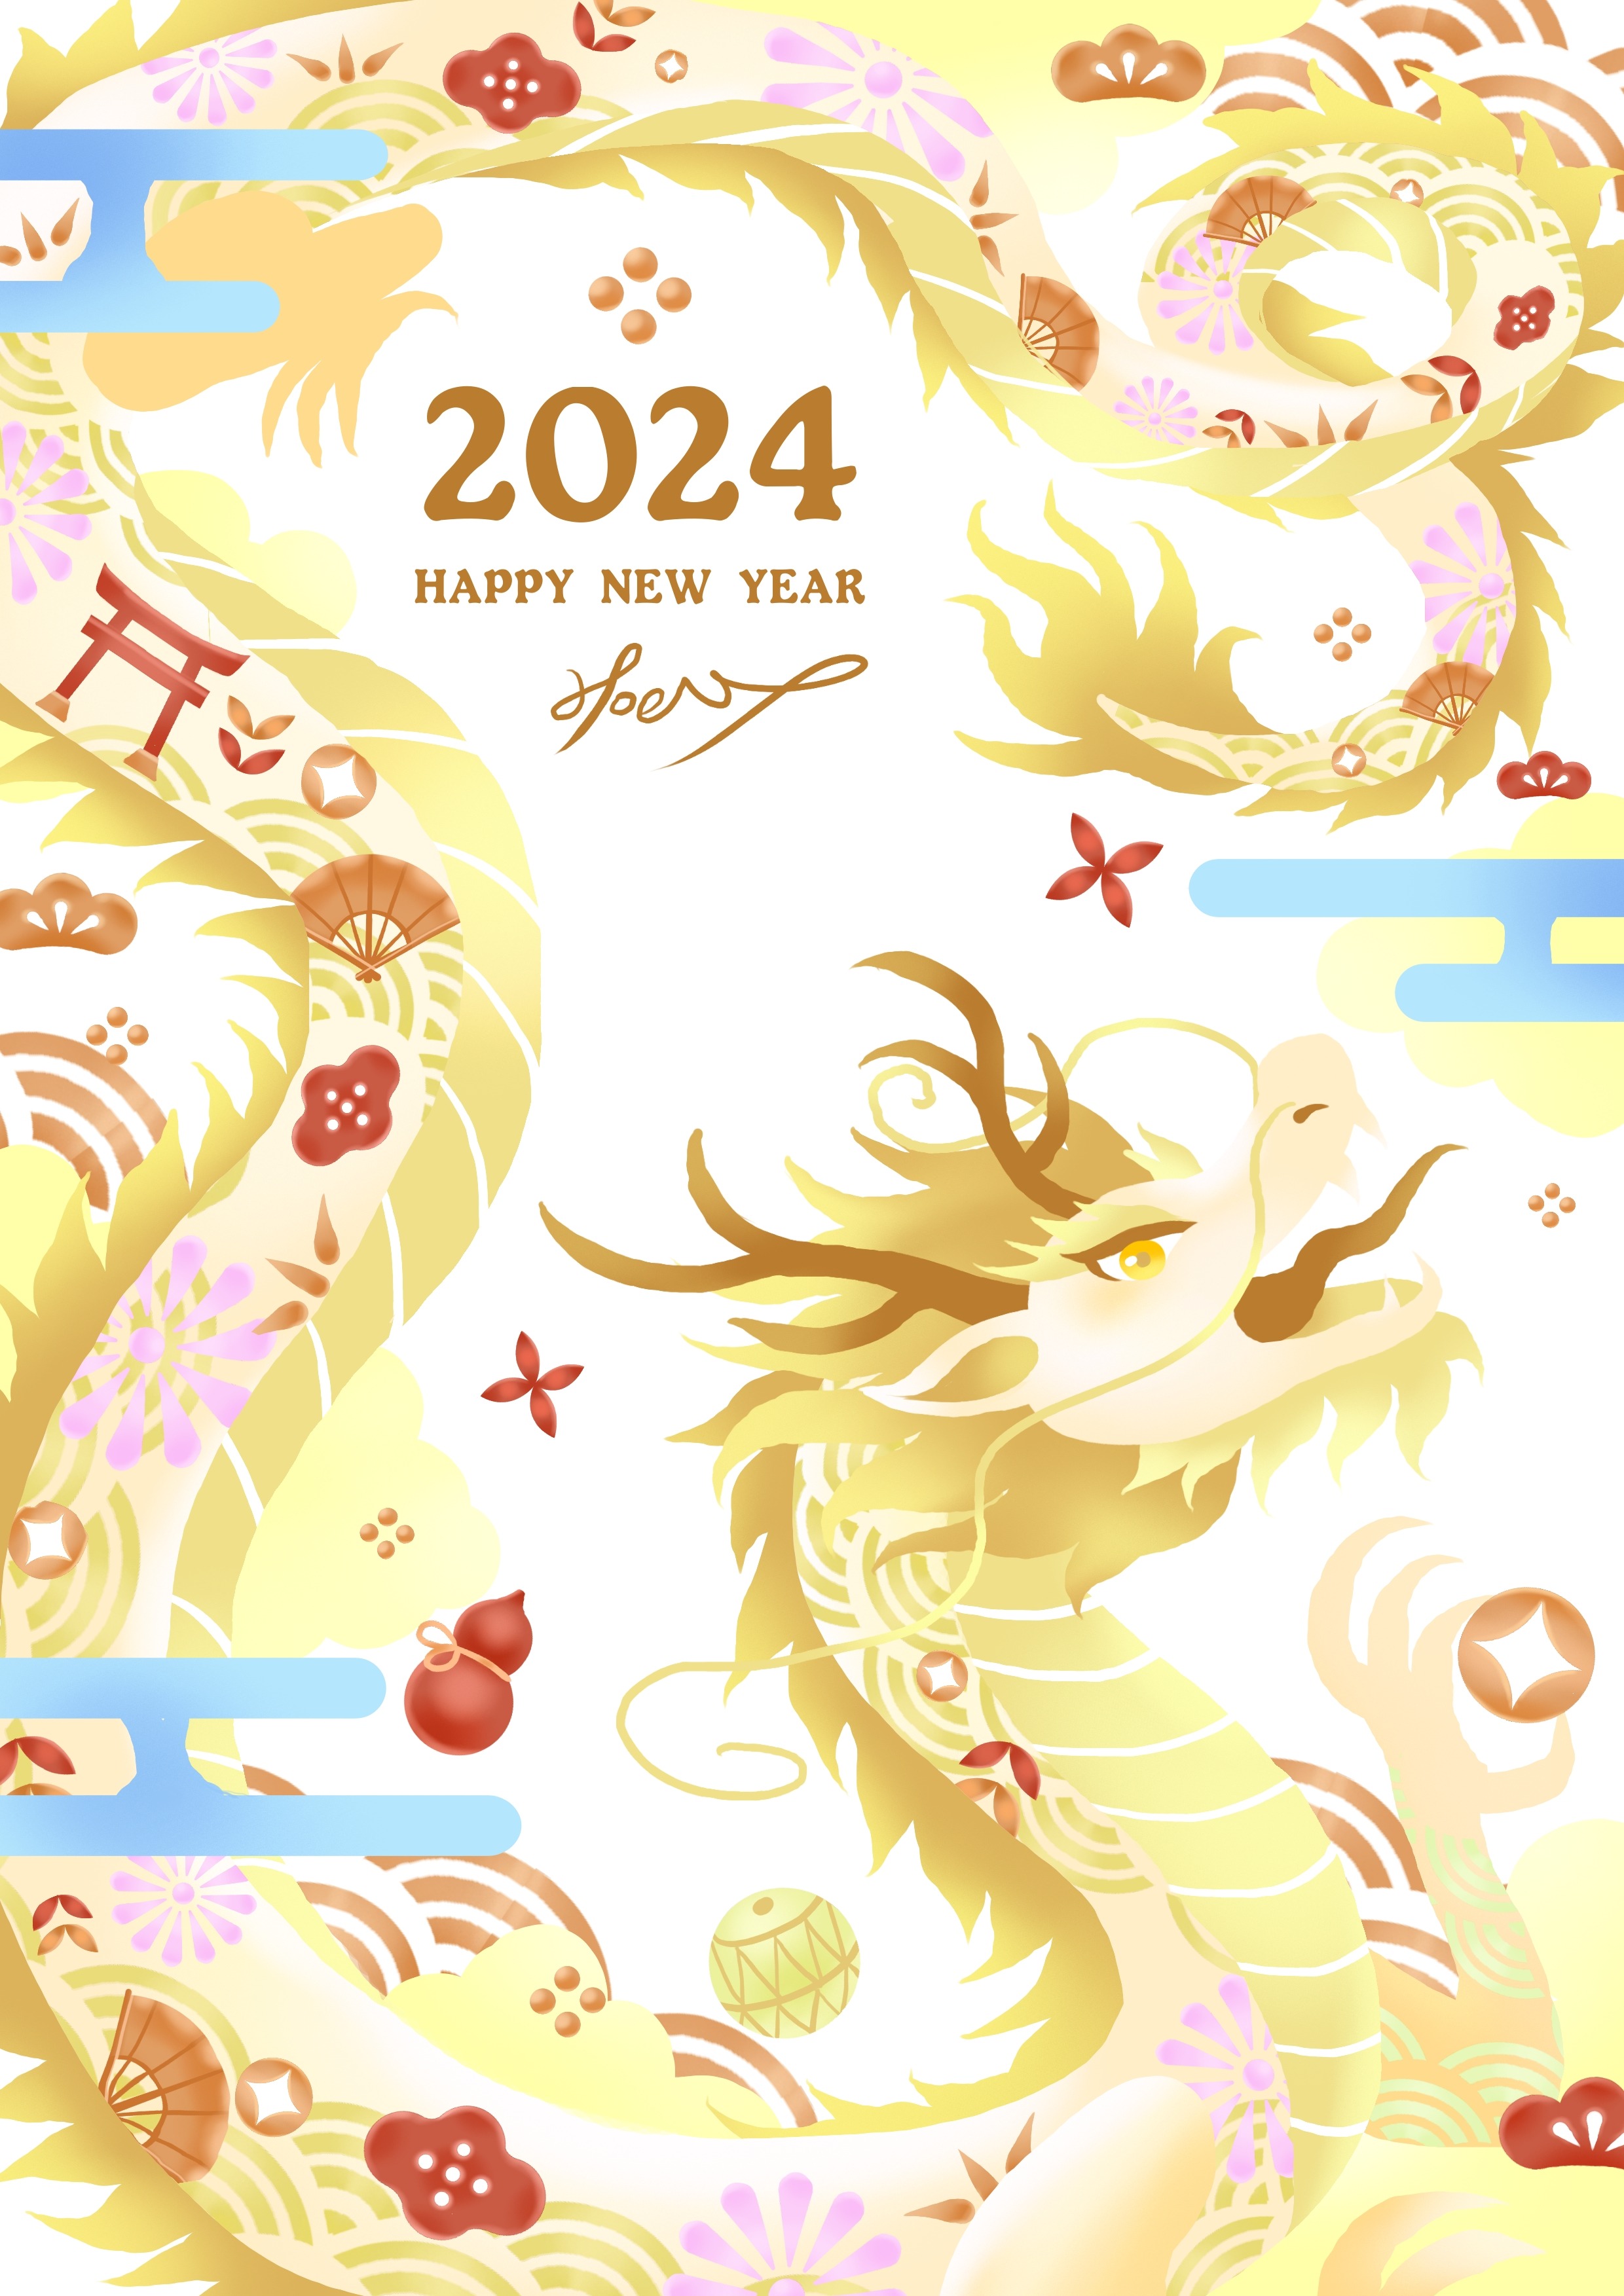 龍年新春賀圖-New Year greetings for the Year of the Dragon-Hoelex.jpg